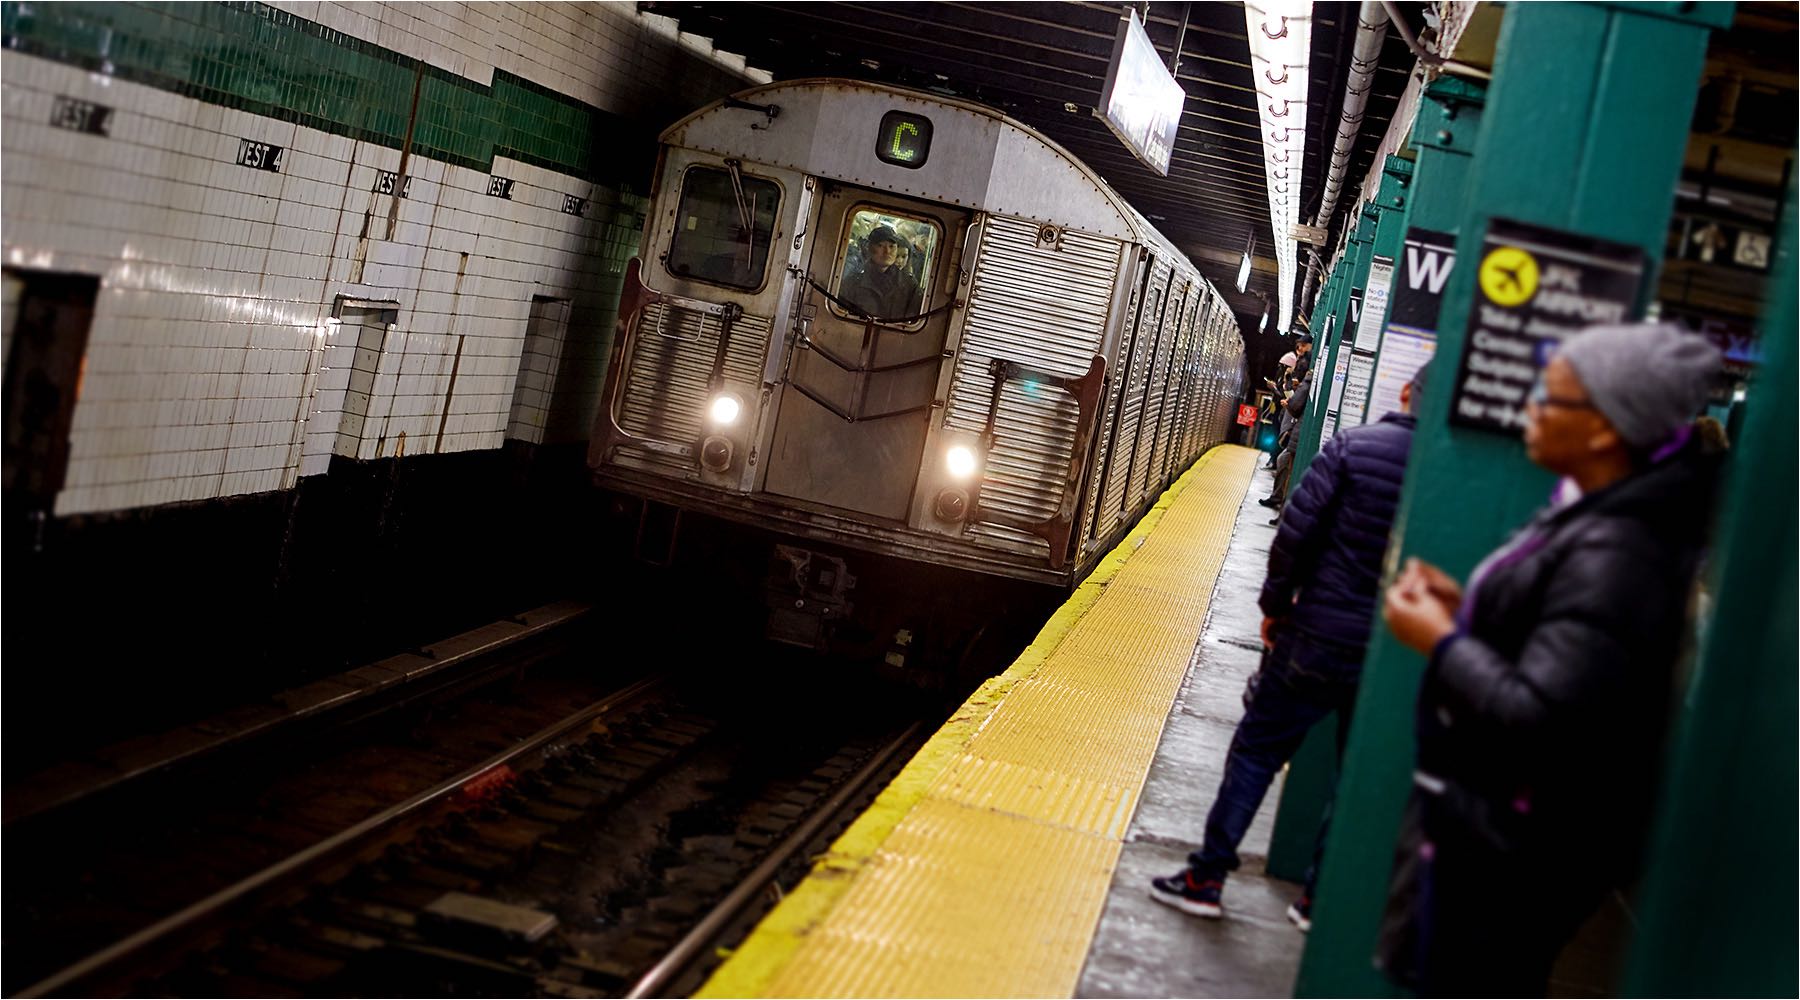  Reportagefotografie. Leben in New York City. U-Bahn Station Manhattan. On Location Fotografie mit vorhandenem Licht. Copyright by Fotostudio Jörg Riethausen 